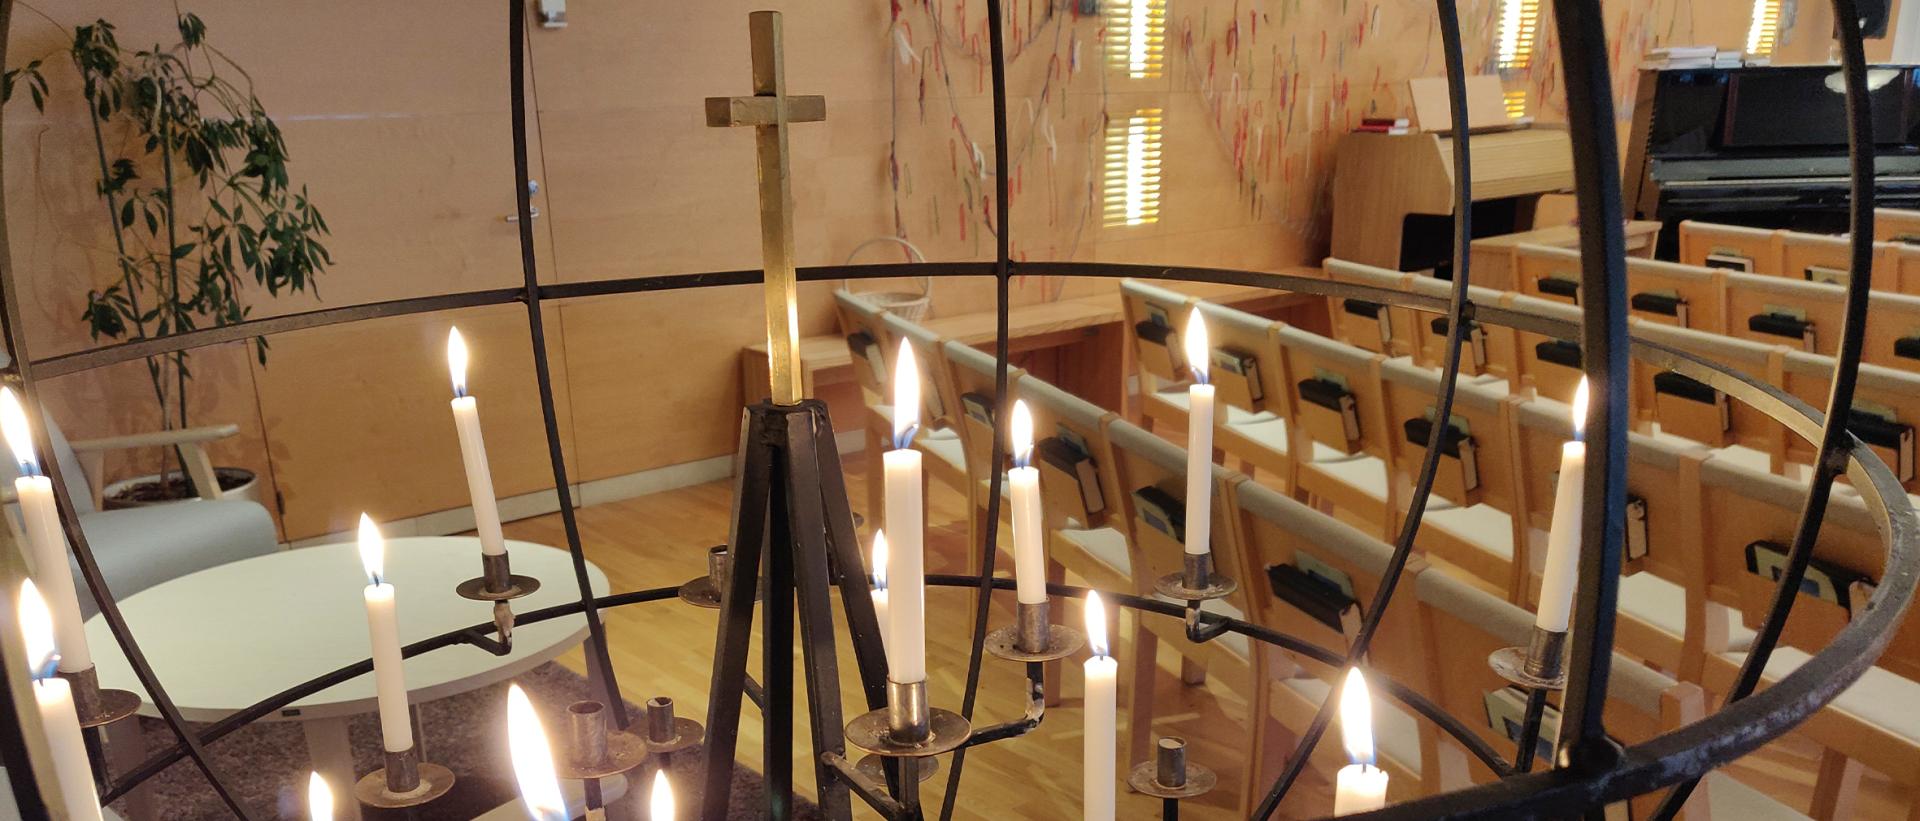 Vartiokylän kirkon lähetyskynttelikkö, jossa palavia kynttilöitä